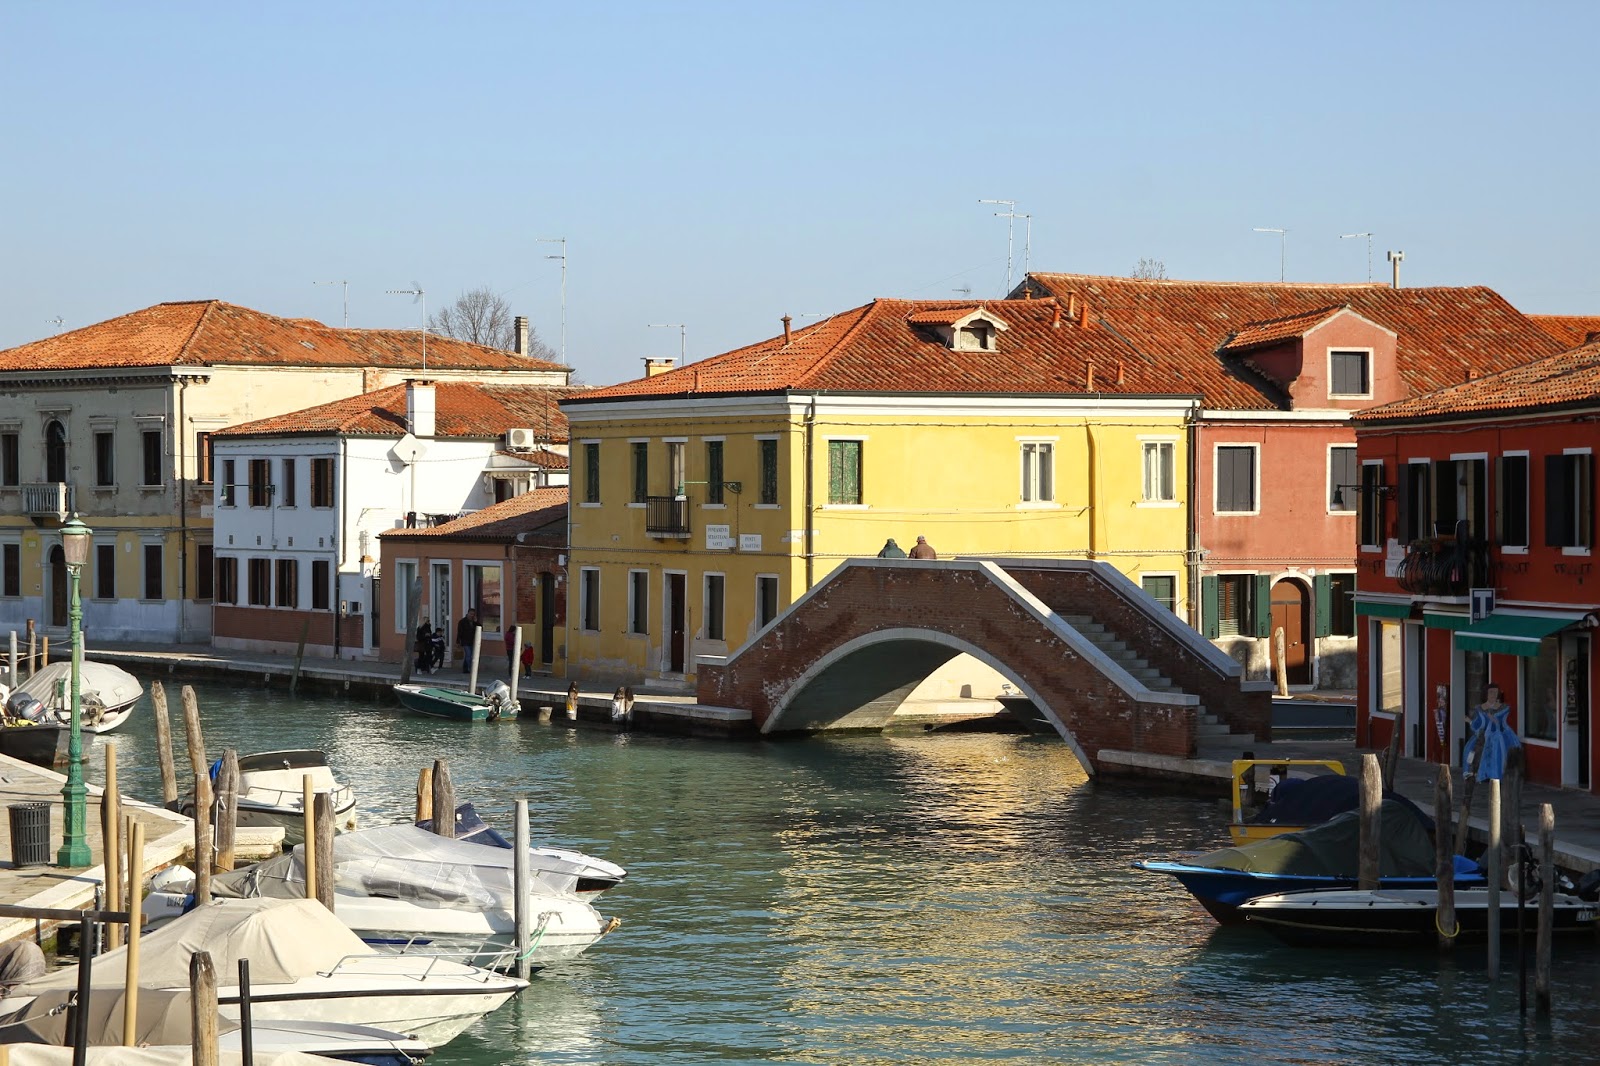 VISITAR MURANO, a ilha onde se aprende a arte do vidro ao longo dos séculos (Veneza) | Itália